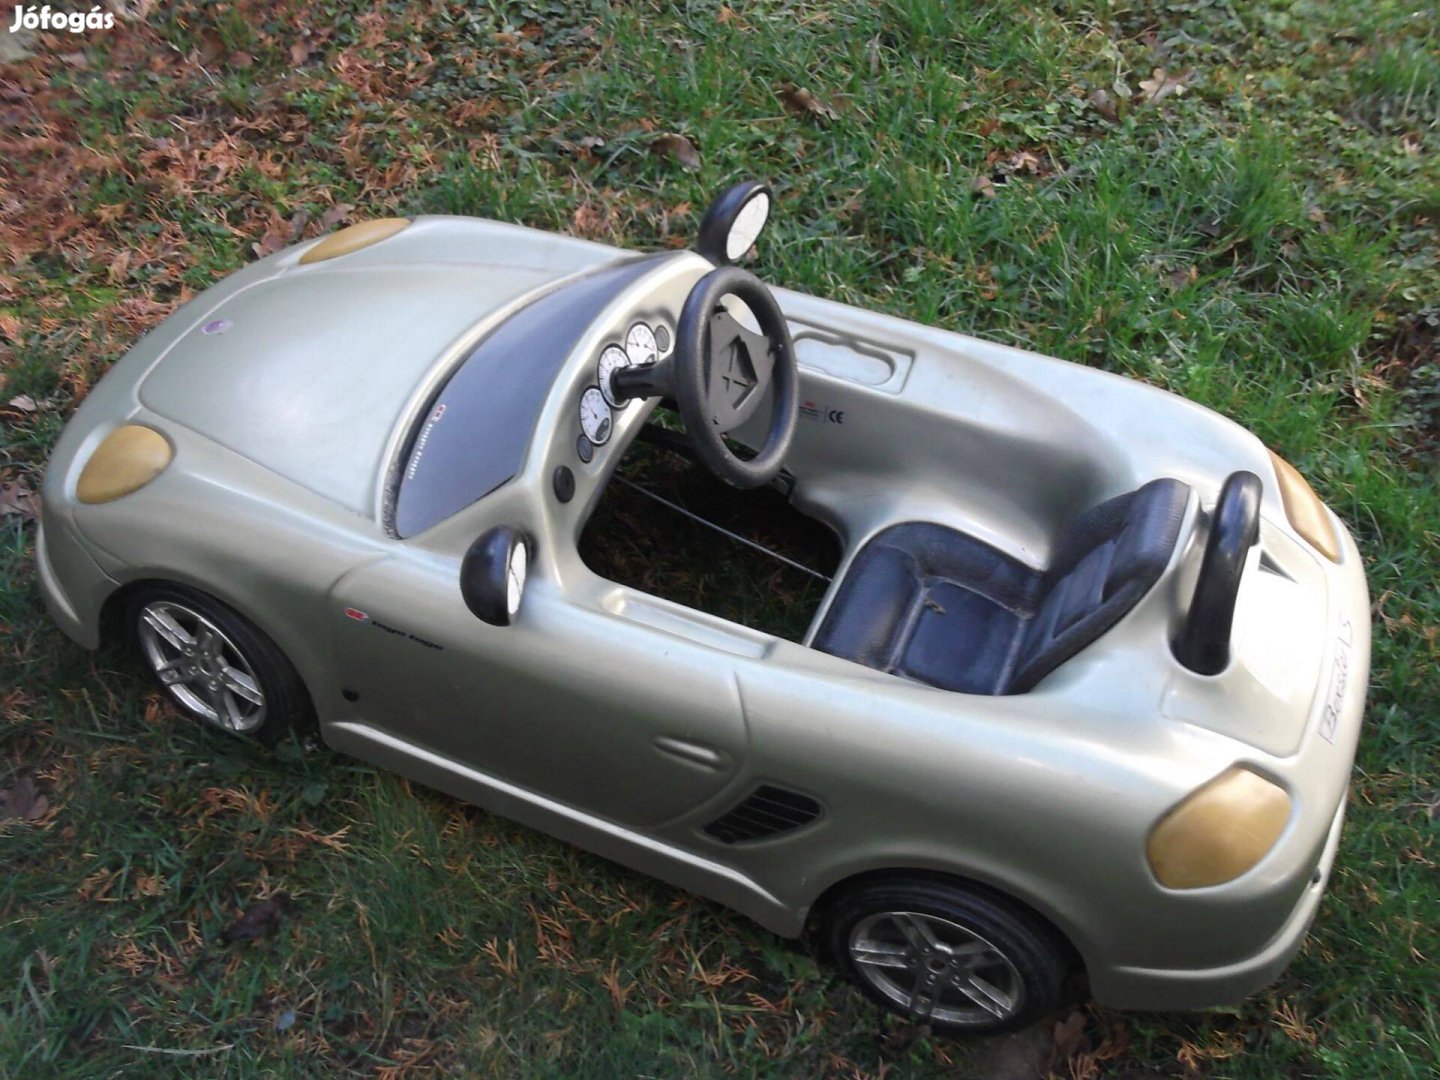 Eladó egy retro pedálos műanyag borítású Porsche Cabrio kisebb hibával